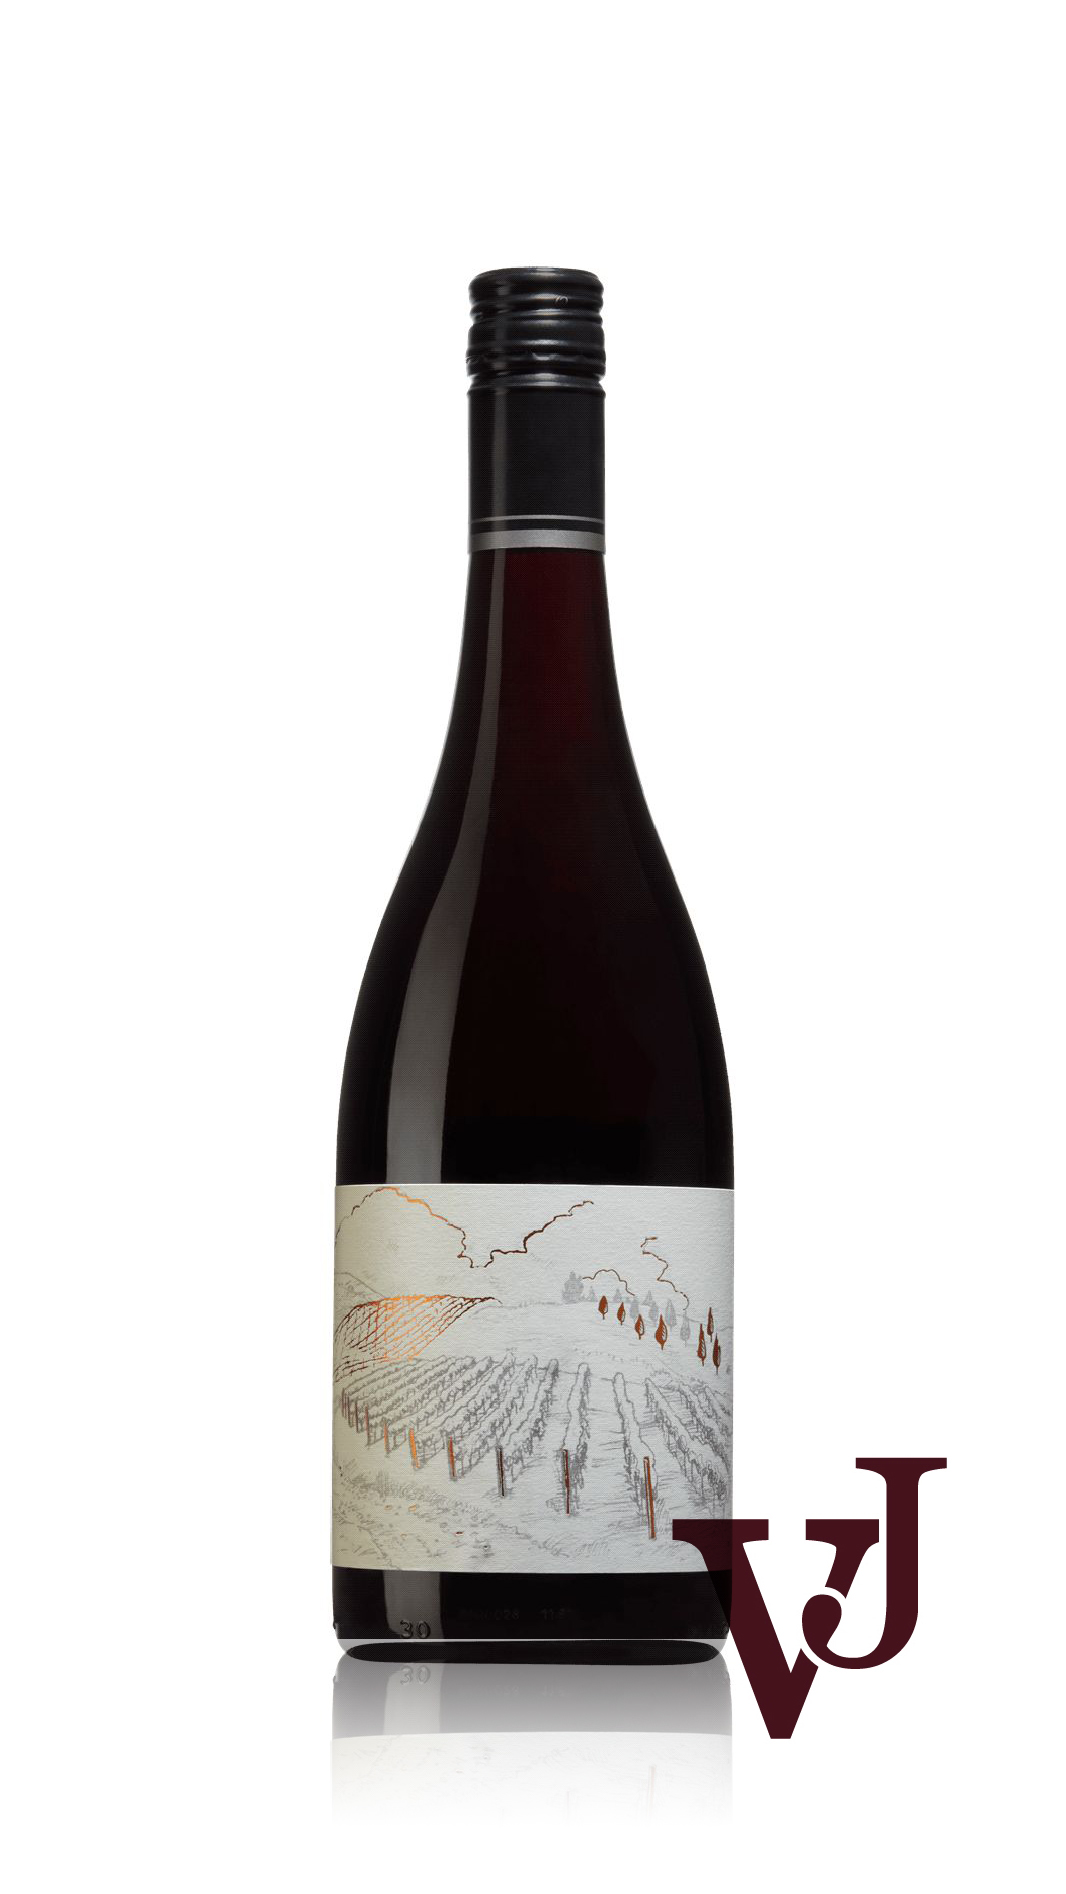 Rött Vin - Greystone Vineyard artikel nummer 9467101 från producenten Greystone Wines från området Nya Zeeland